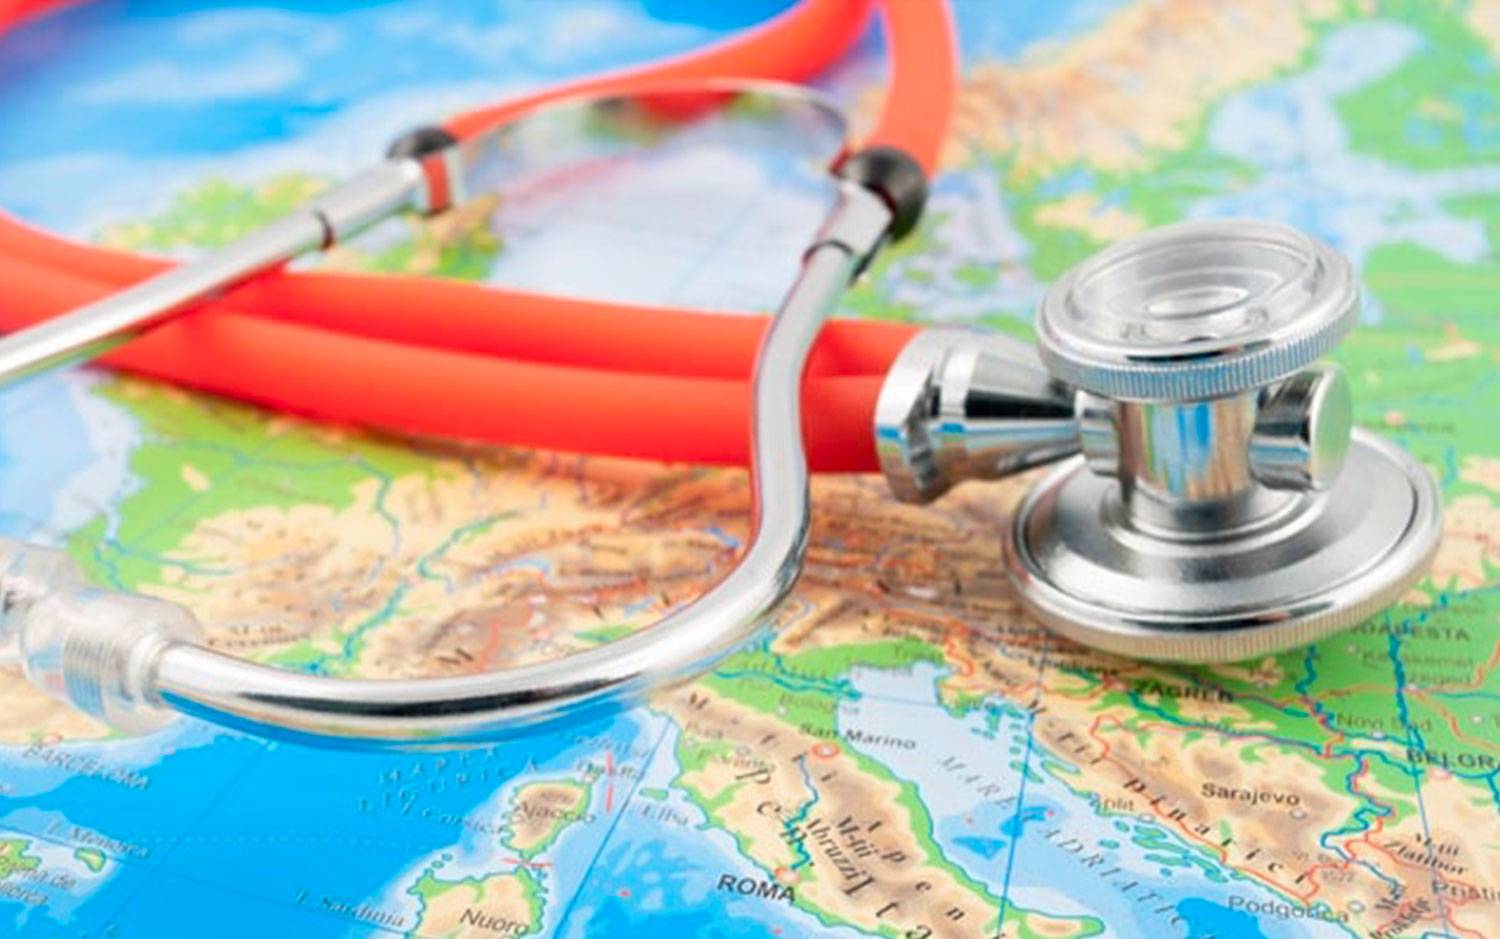 Обязательная медицинская страховка для поездки во вьетнам с покрытием коронавируса covid-19 в 2022 году.